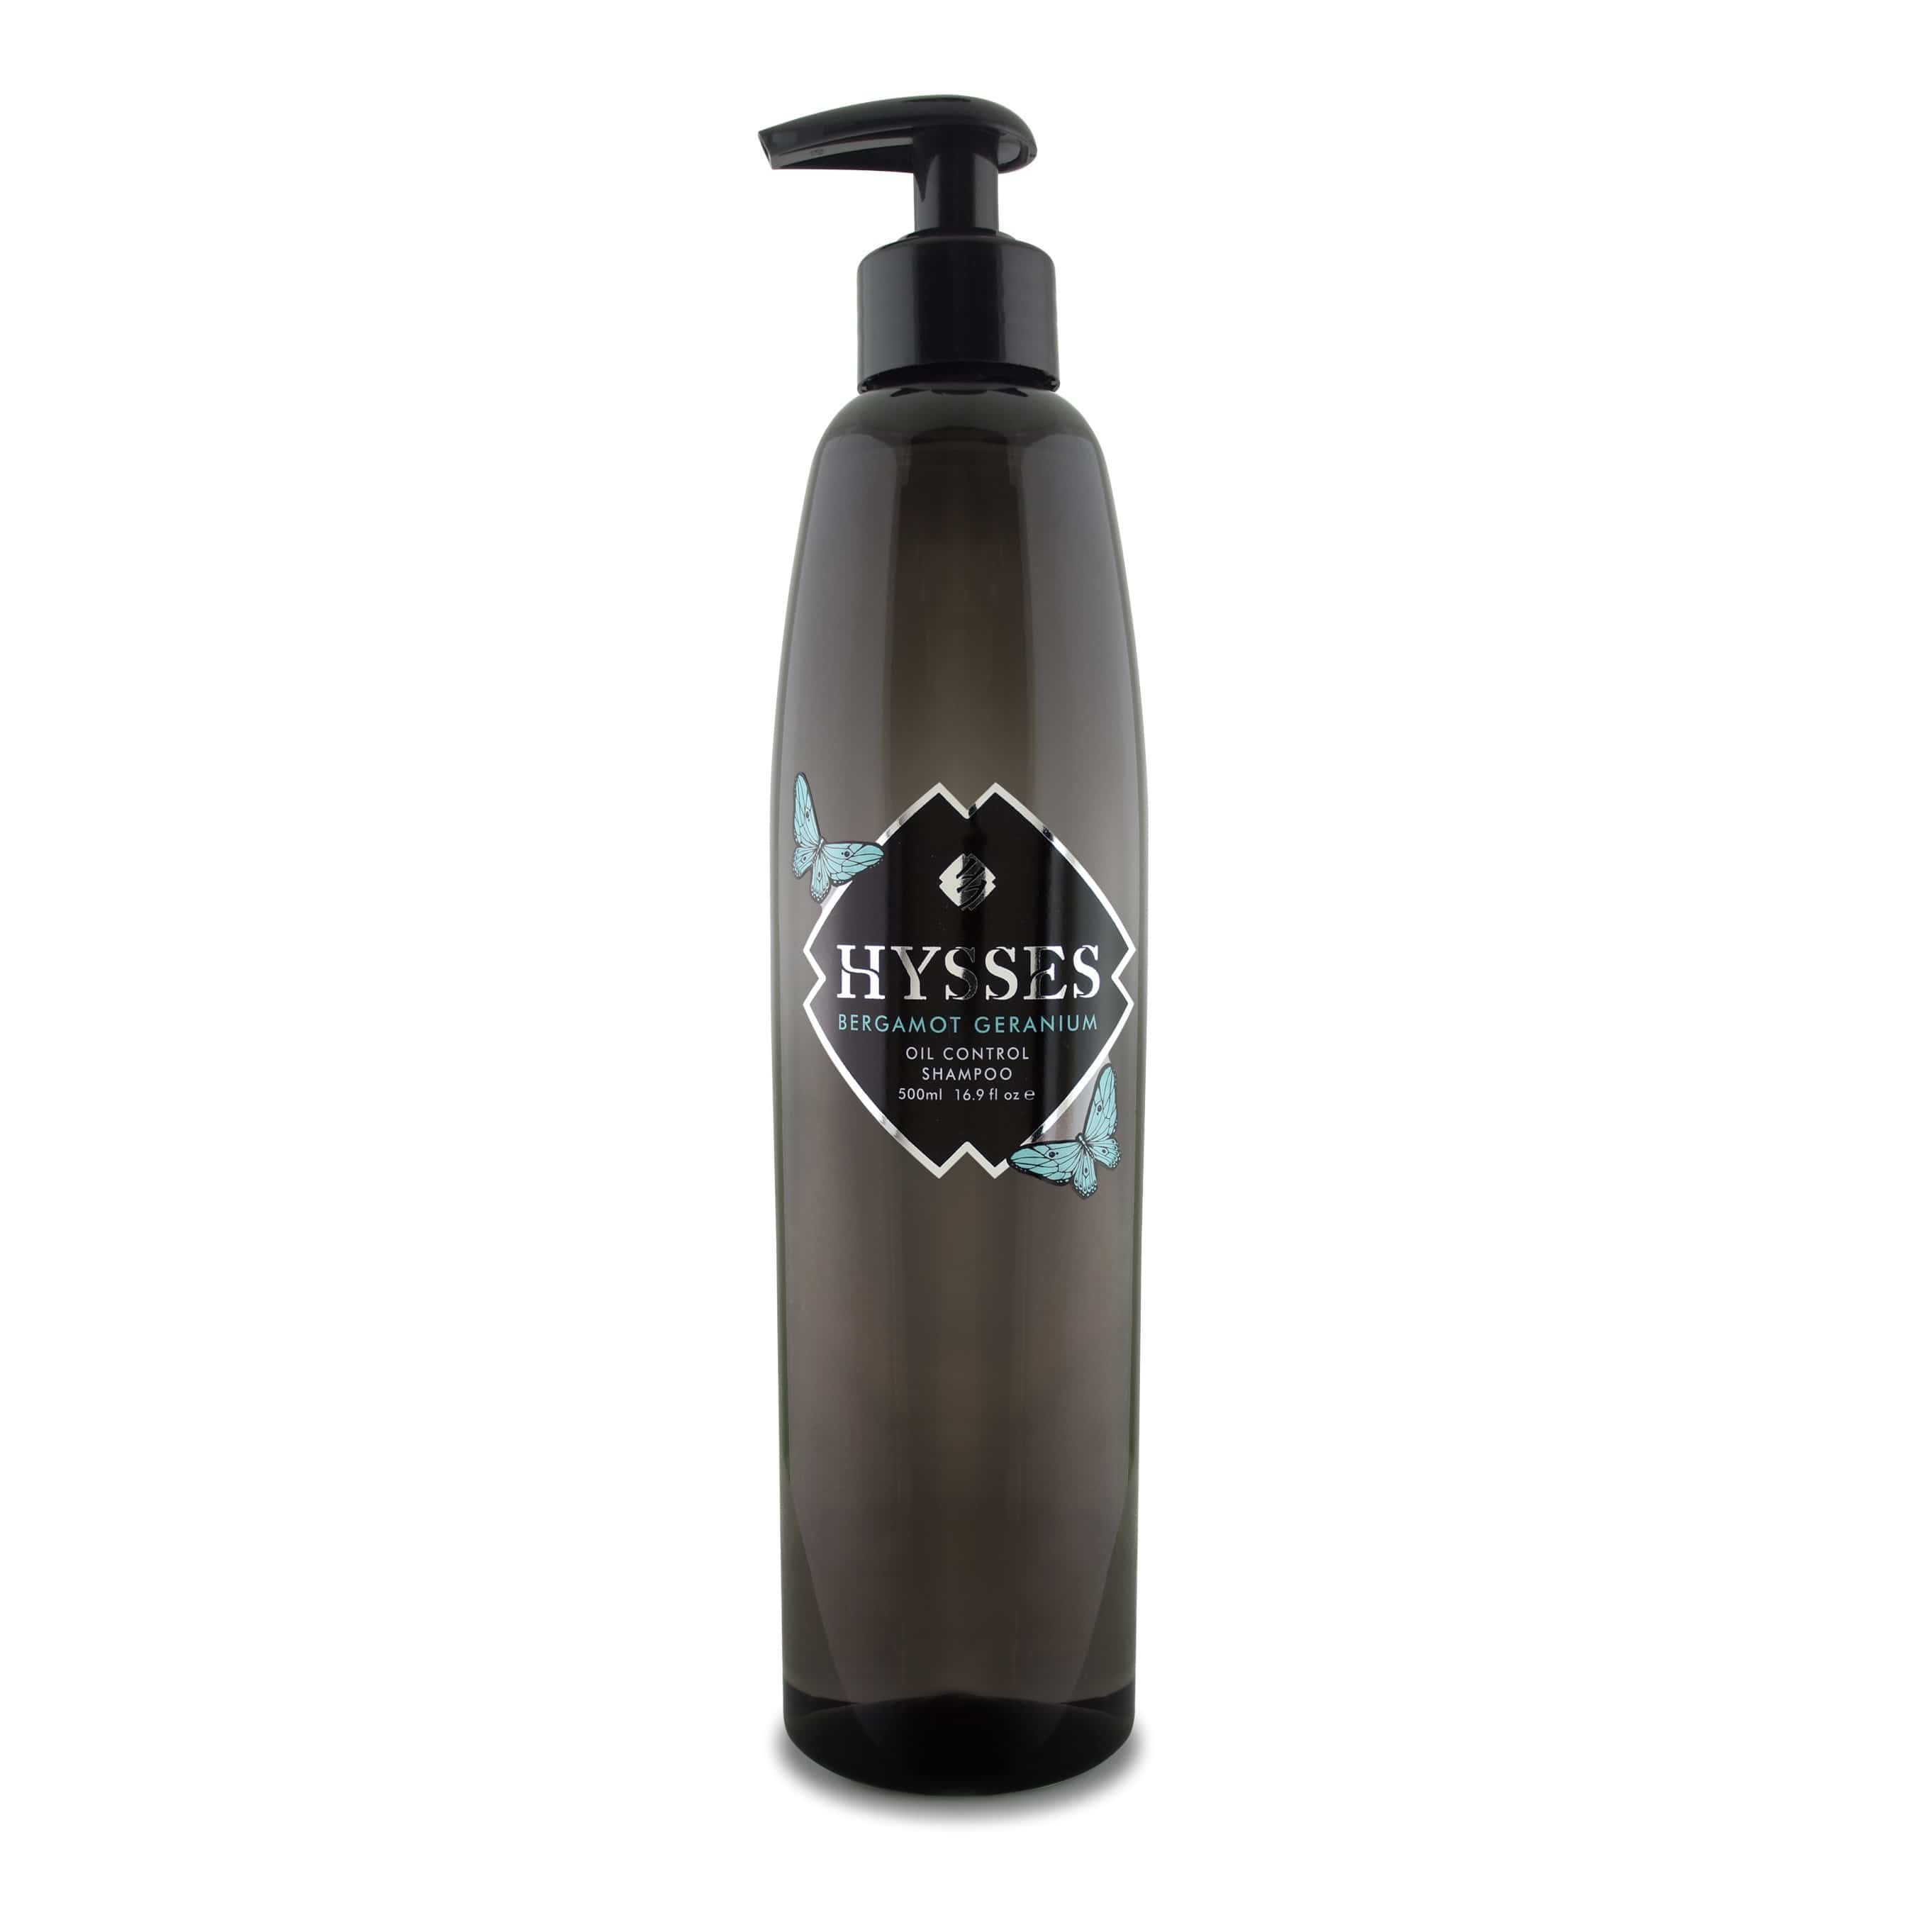 Hysses Hair Care 500ml Shampoo Bergamot Geranium